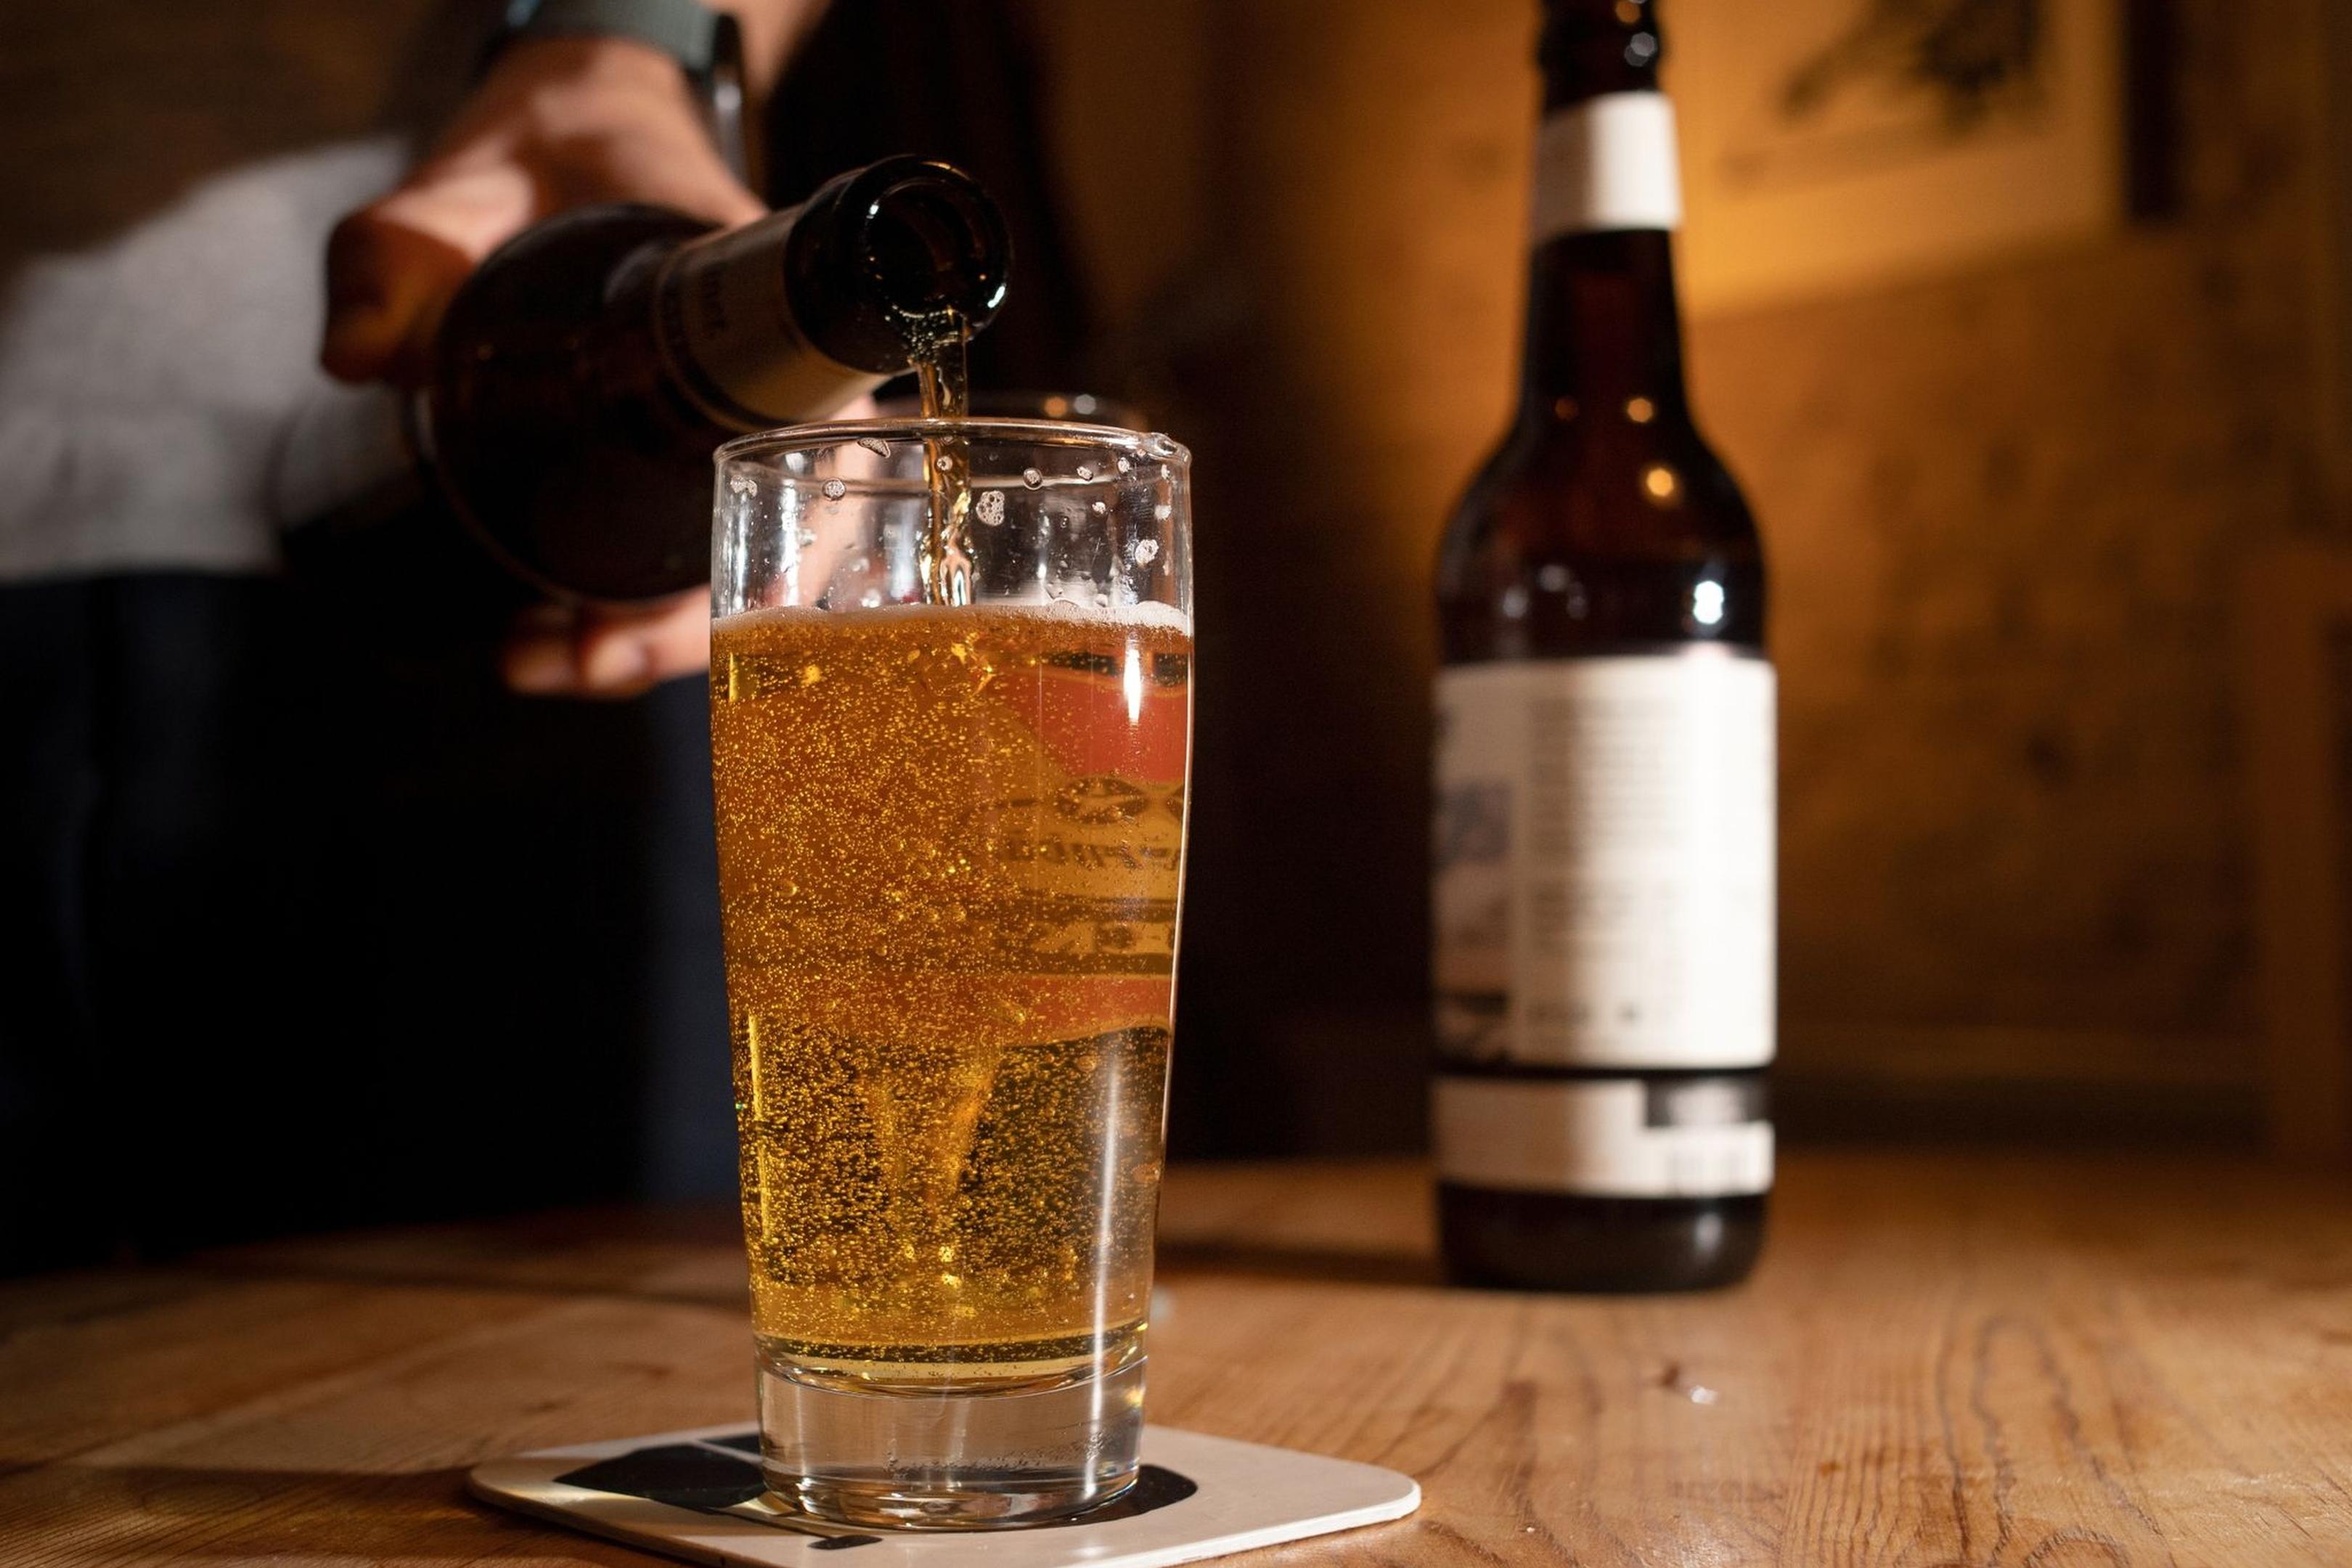 Das Mindesthaltbarkeitsdatum bei Bier bedeutet nur, dass der Hersteller bis dahin eine Genussgarantie gibt. Nach Ablauf kann man es meist noch gut trinken.